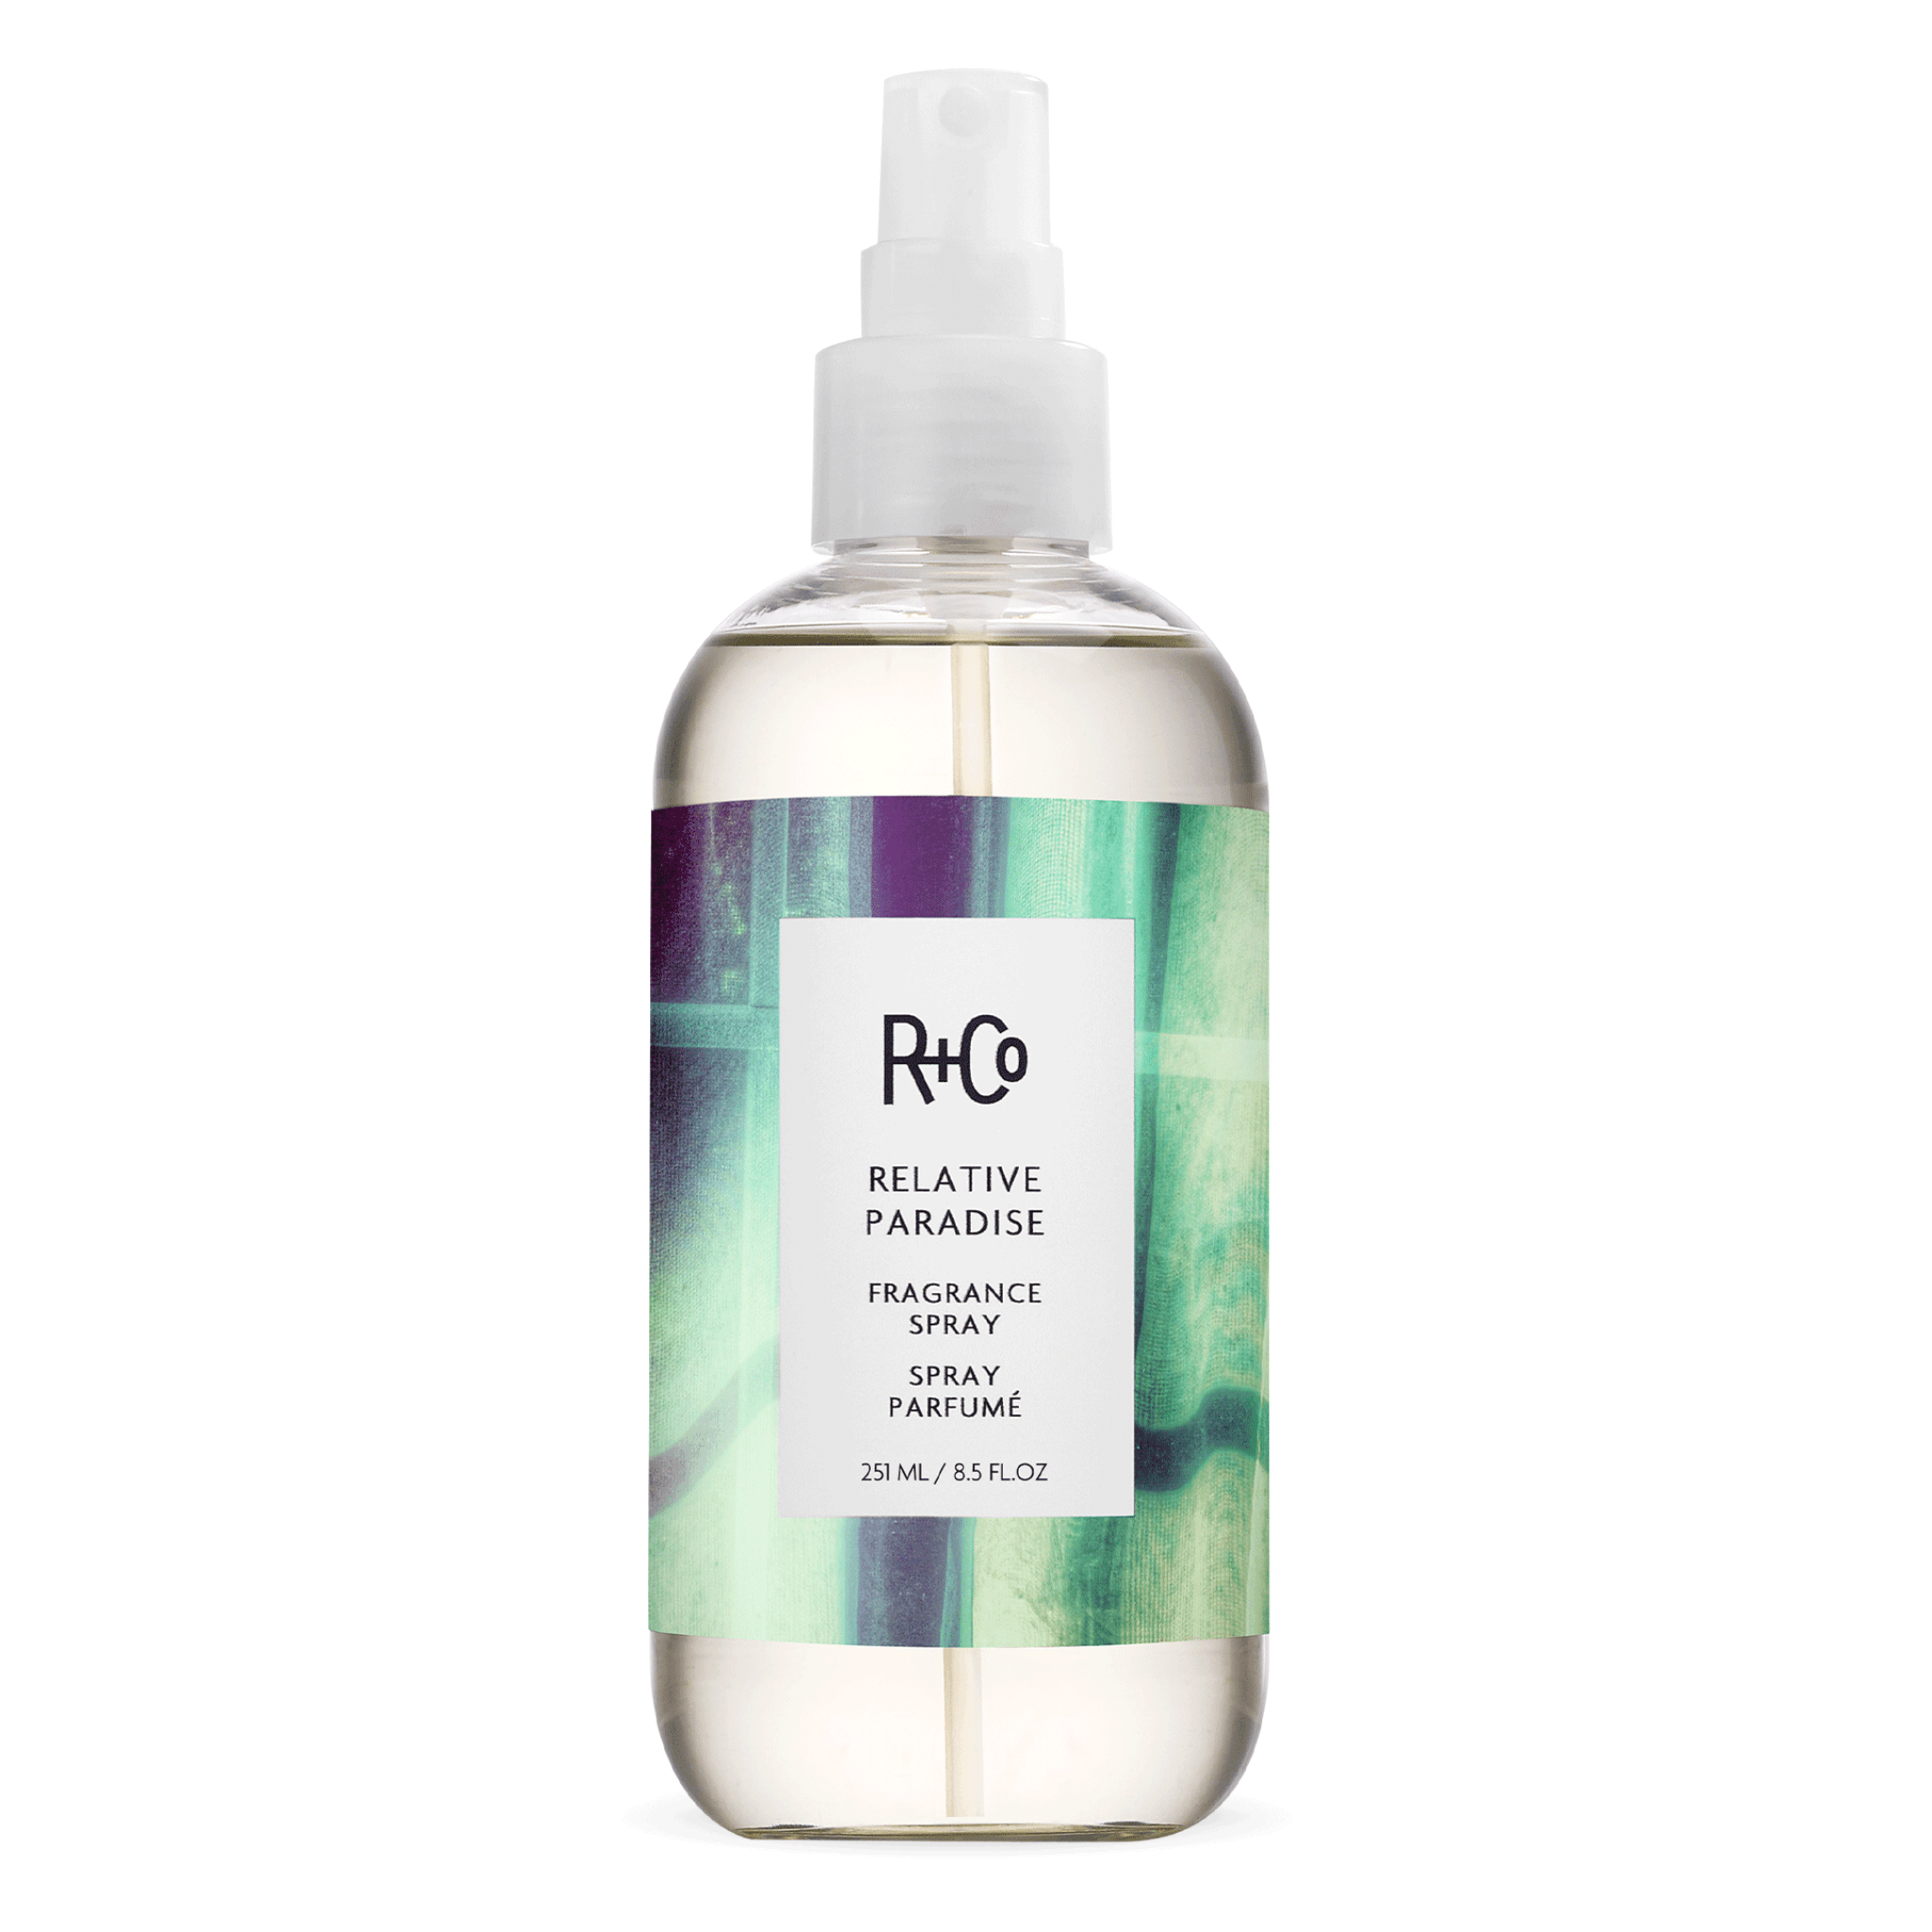 R+Co. Relative Paradise Spray Parfumé - 241 ml - Concept C. Shop